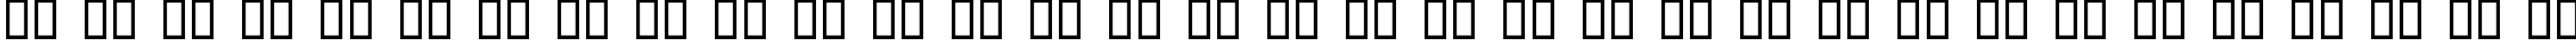 Пример написания русского алфавита шрифтом Jerusalem Bold